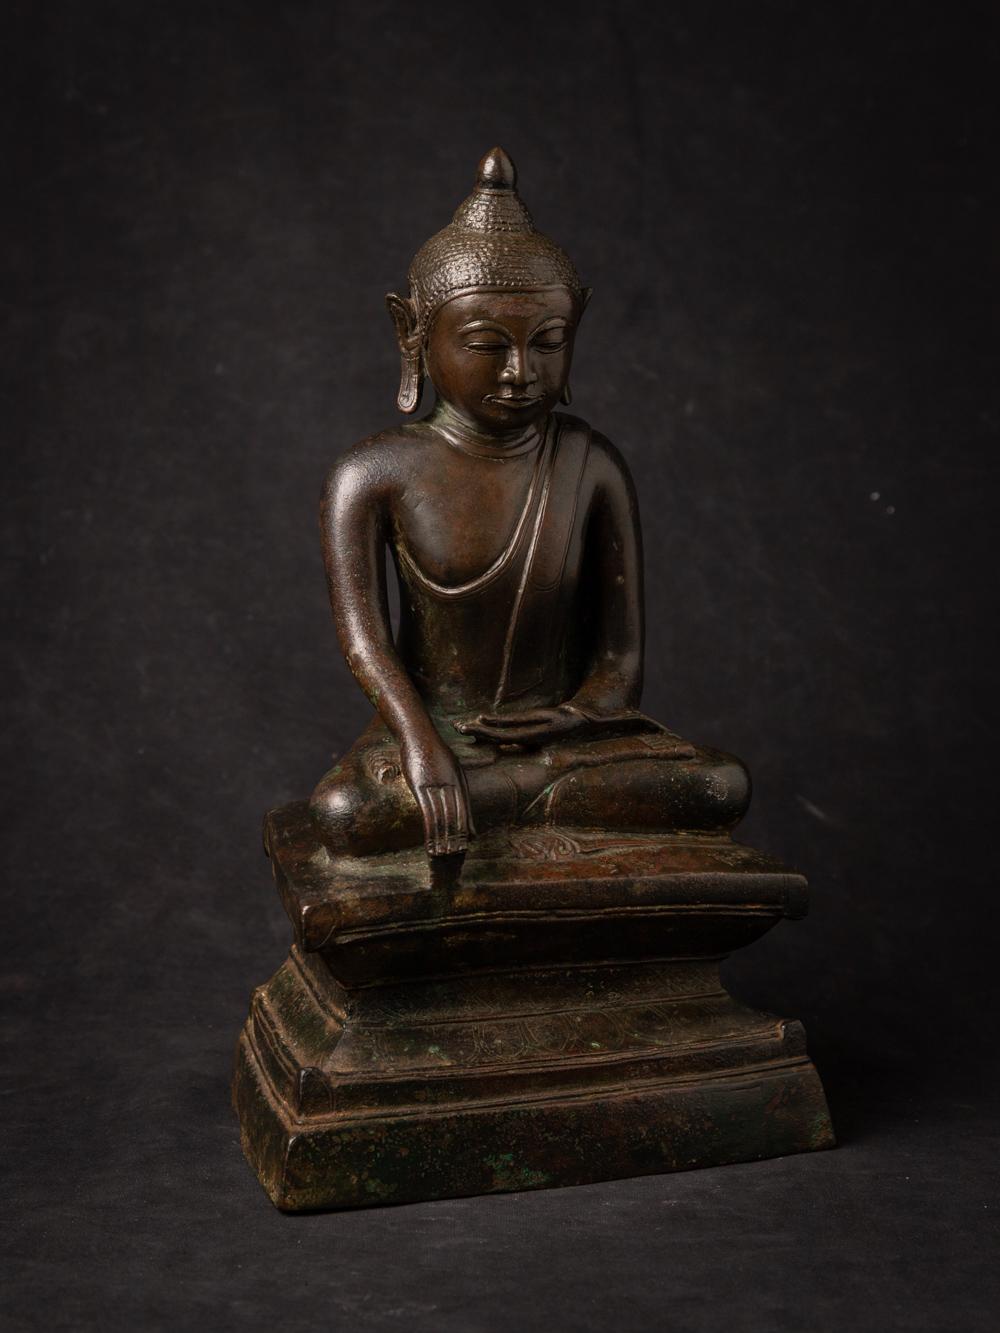 Diese Bronzeskulptur aus Birma aus dem 15. Jahrhundert ist ein seltenes und bemerkenswertes Kunstwerk. Sie ist im unverwechselbaren Toungoo-Stil gefertigt und hat eine Höhe von 34,2 cm sowie Abmessungen von 20,1 cm in der Breite und 13,5 cm in der